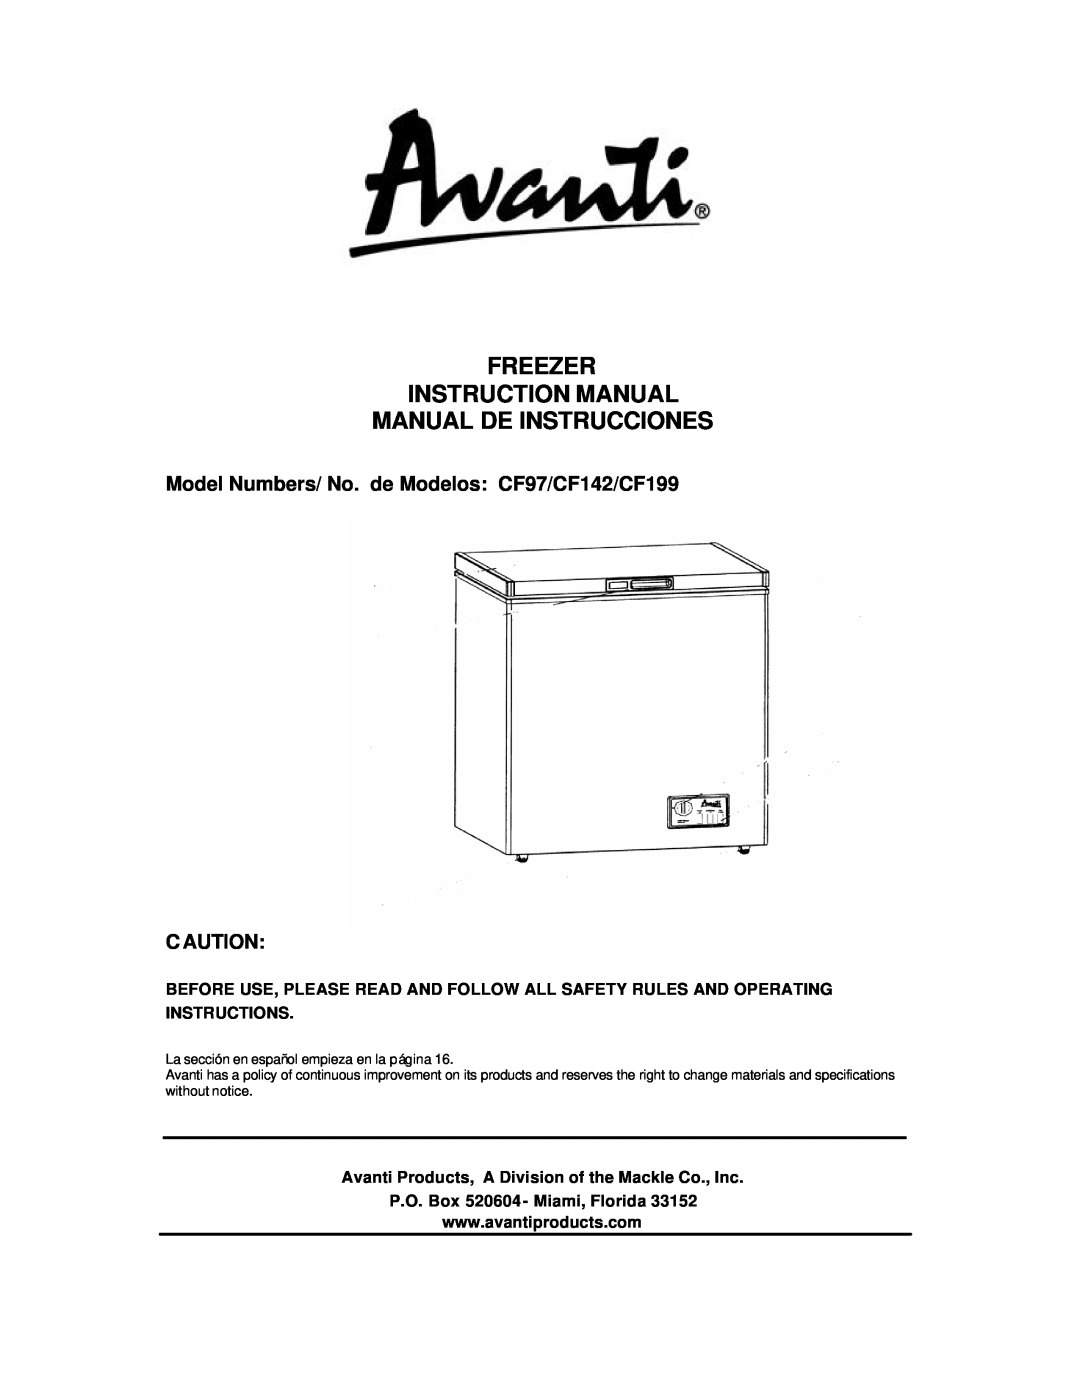 Avanti instruction manual Manual De Instrucciones, Model Numbers/ No. de Modelos CF97/CF142/CF199, C Aution 